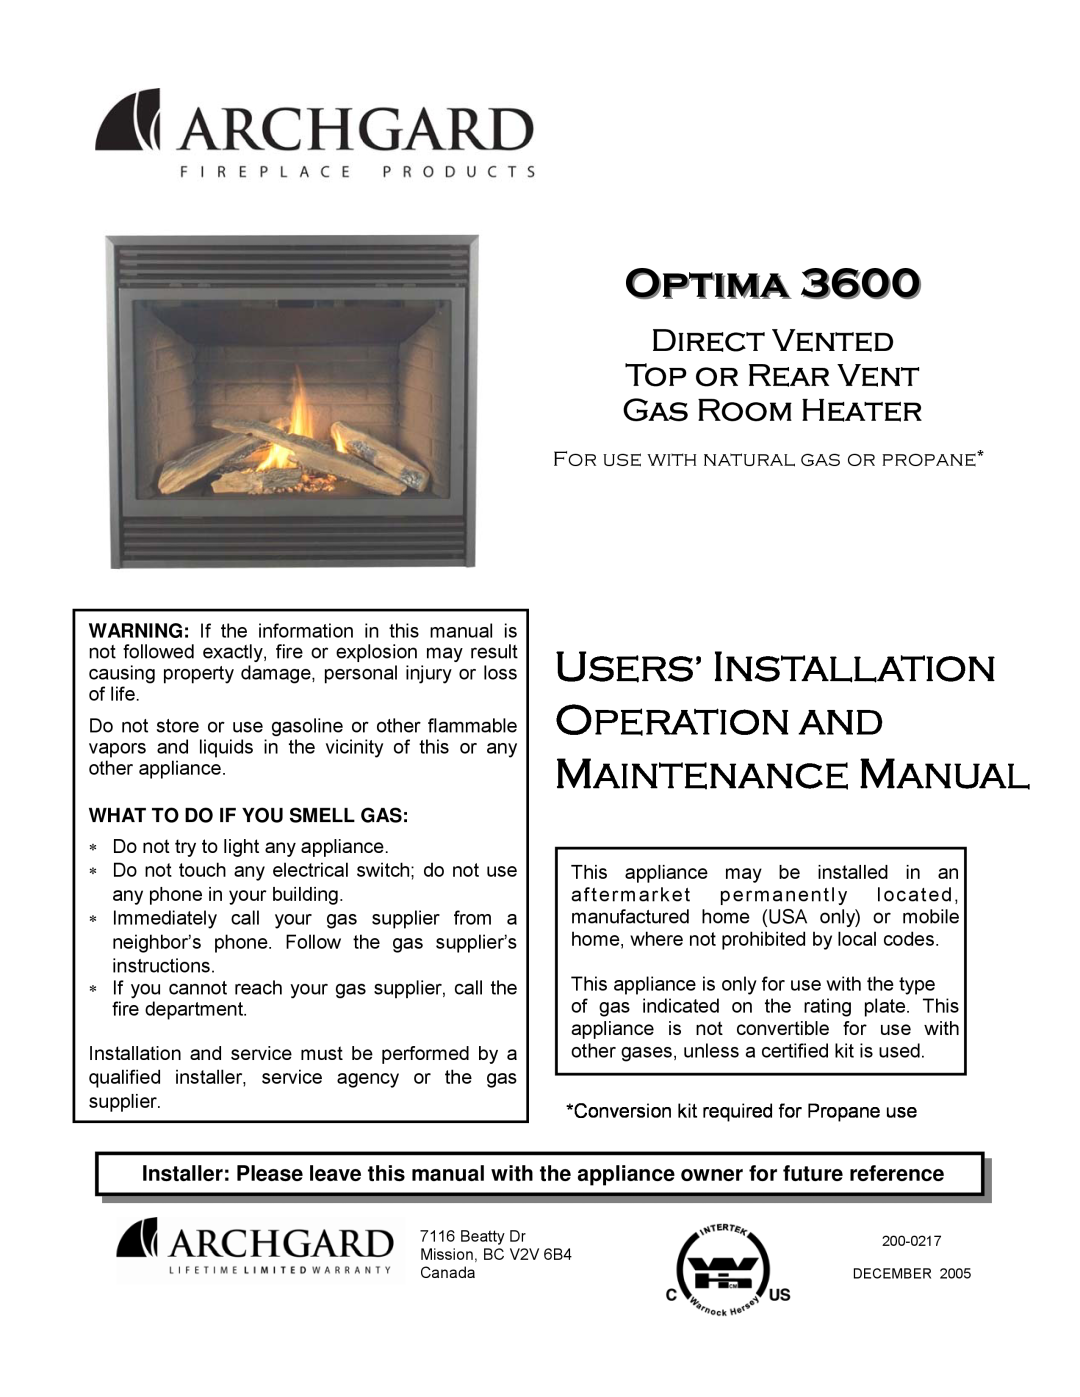 Optima Company Optima 3600O manual Users’ Installation Operation And, Maintenance Manual 